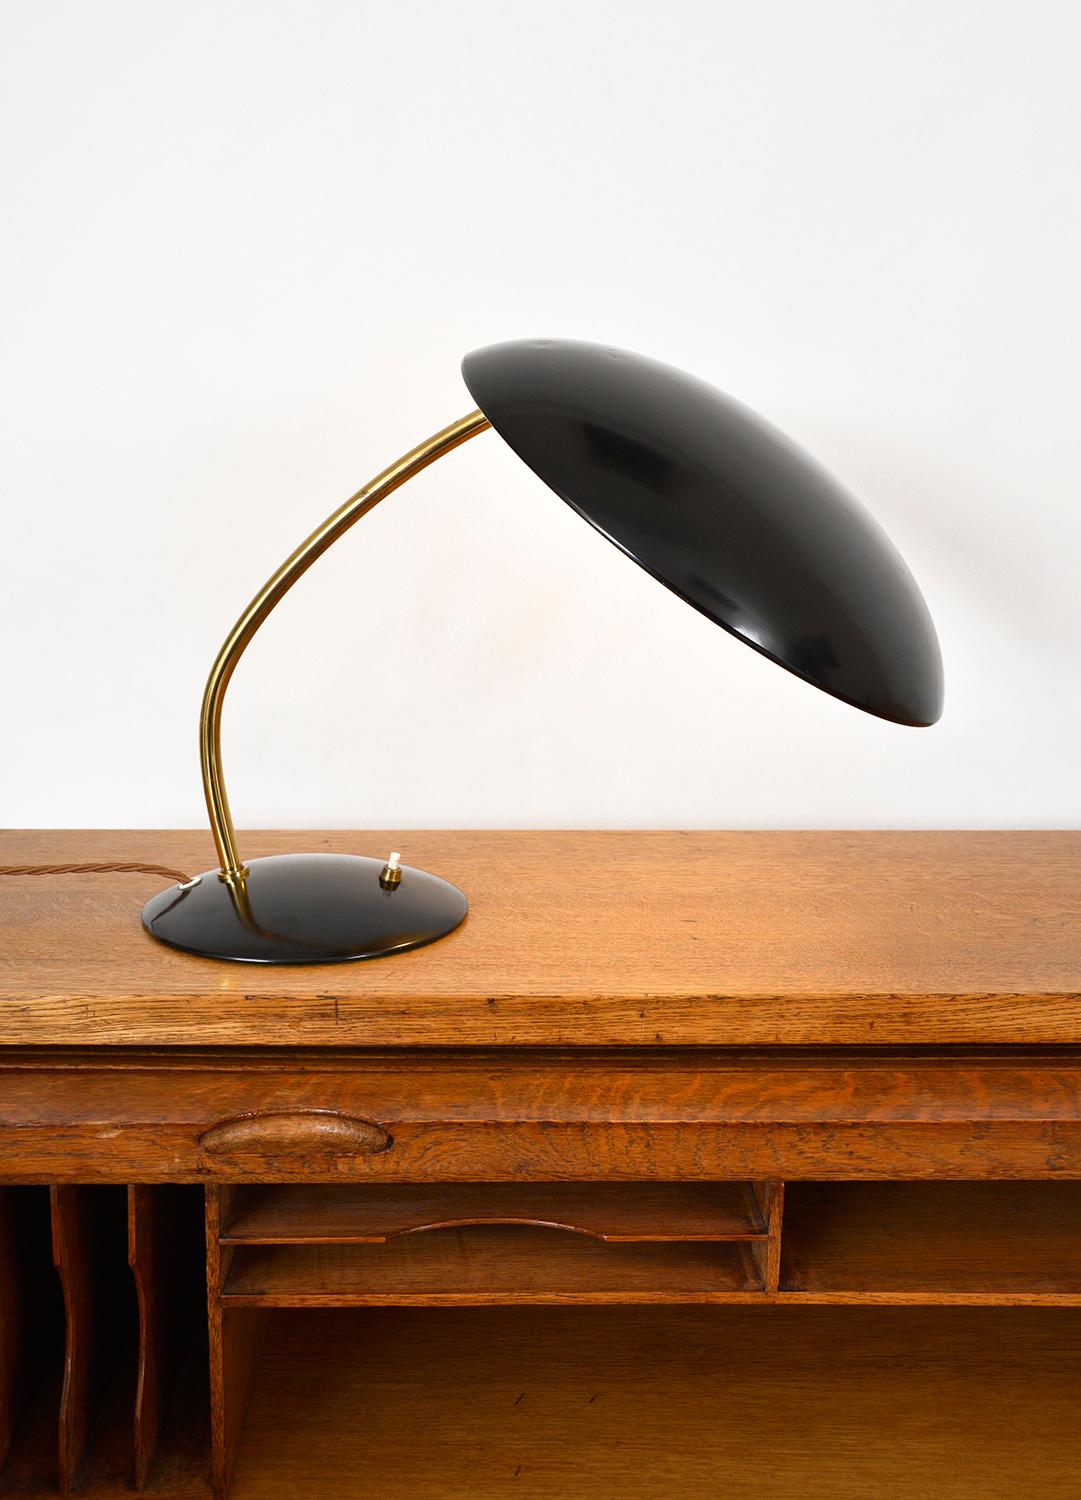 Enameled Midcentury Kaiser Idell Desk Task Lamp by Christian Dell Model 6782 German 1950s